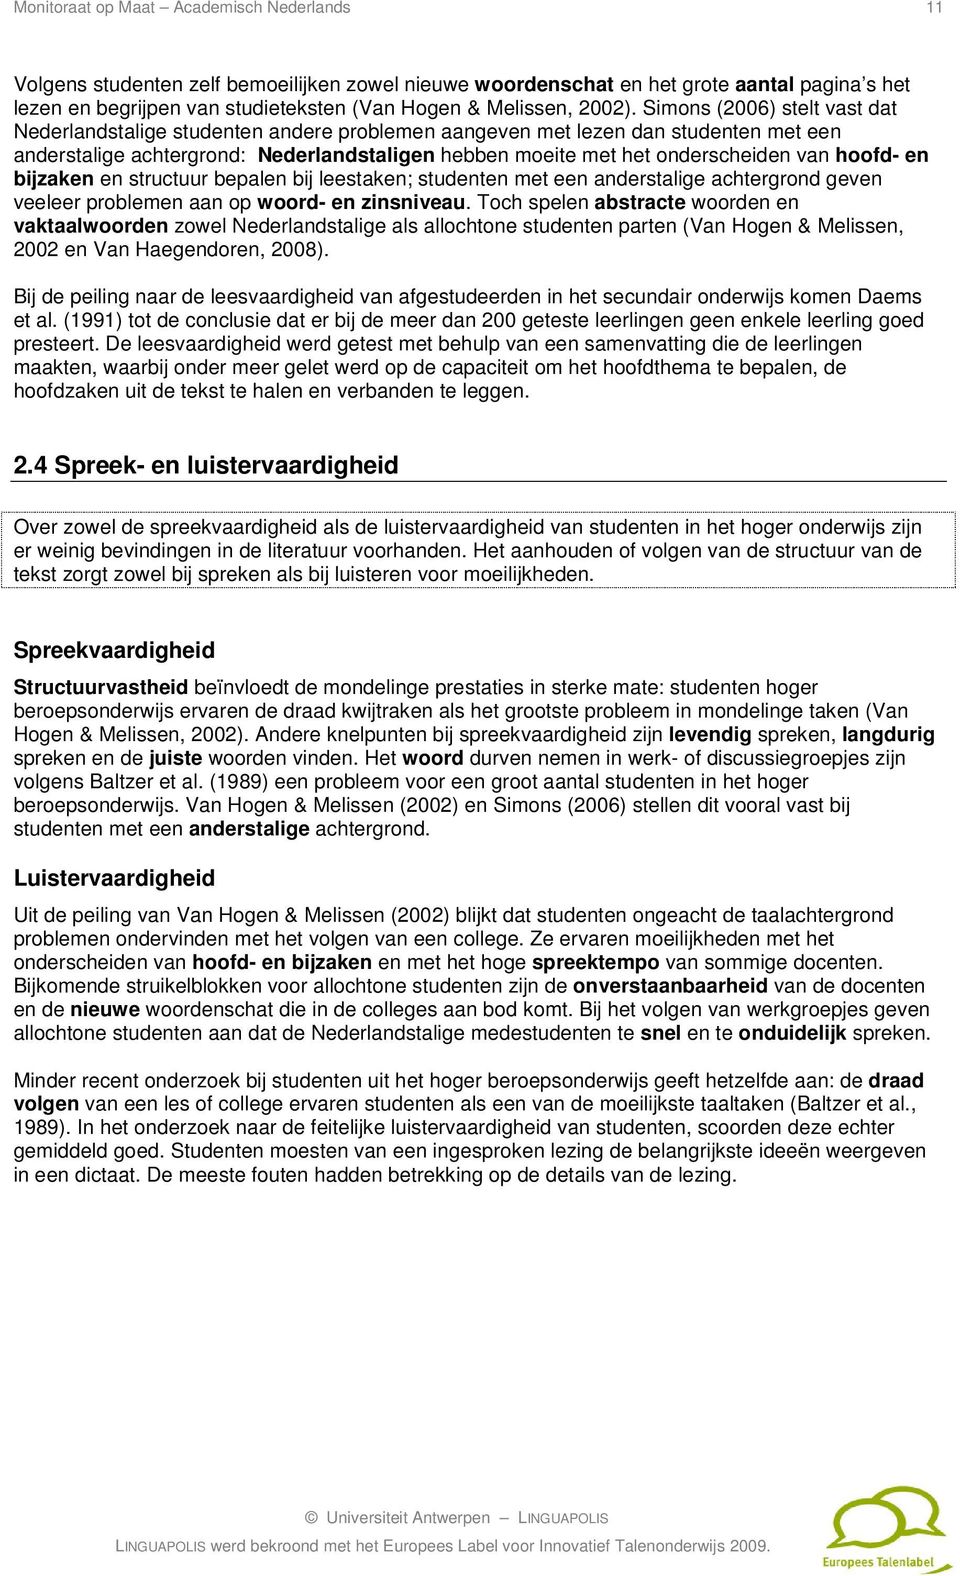 Simons (2006) stelt vast dat Nederlandstalige studenten andere problemen aangeven met lezen dan studenten met een anderstalige achtergrond: Nederlandstaligen hebben moeite met het onderscheiden van